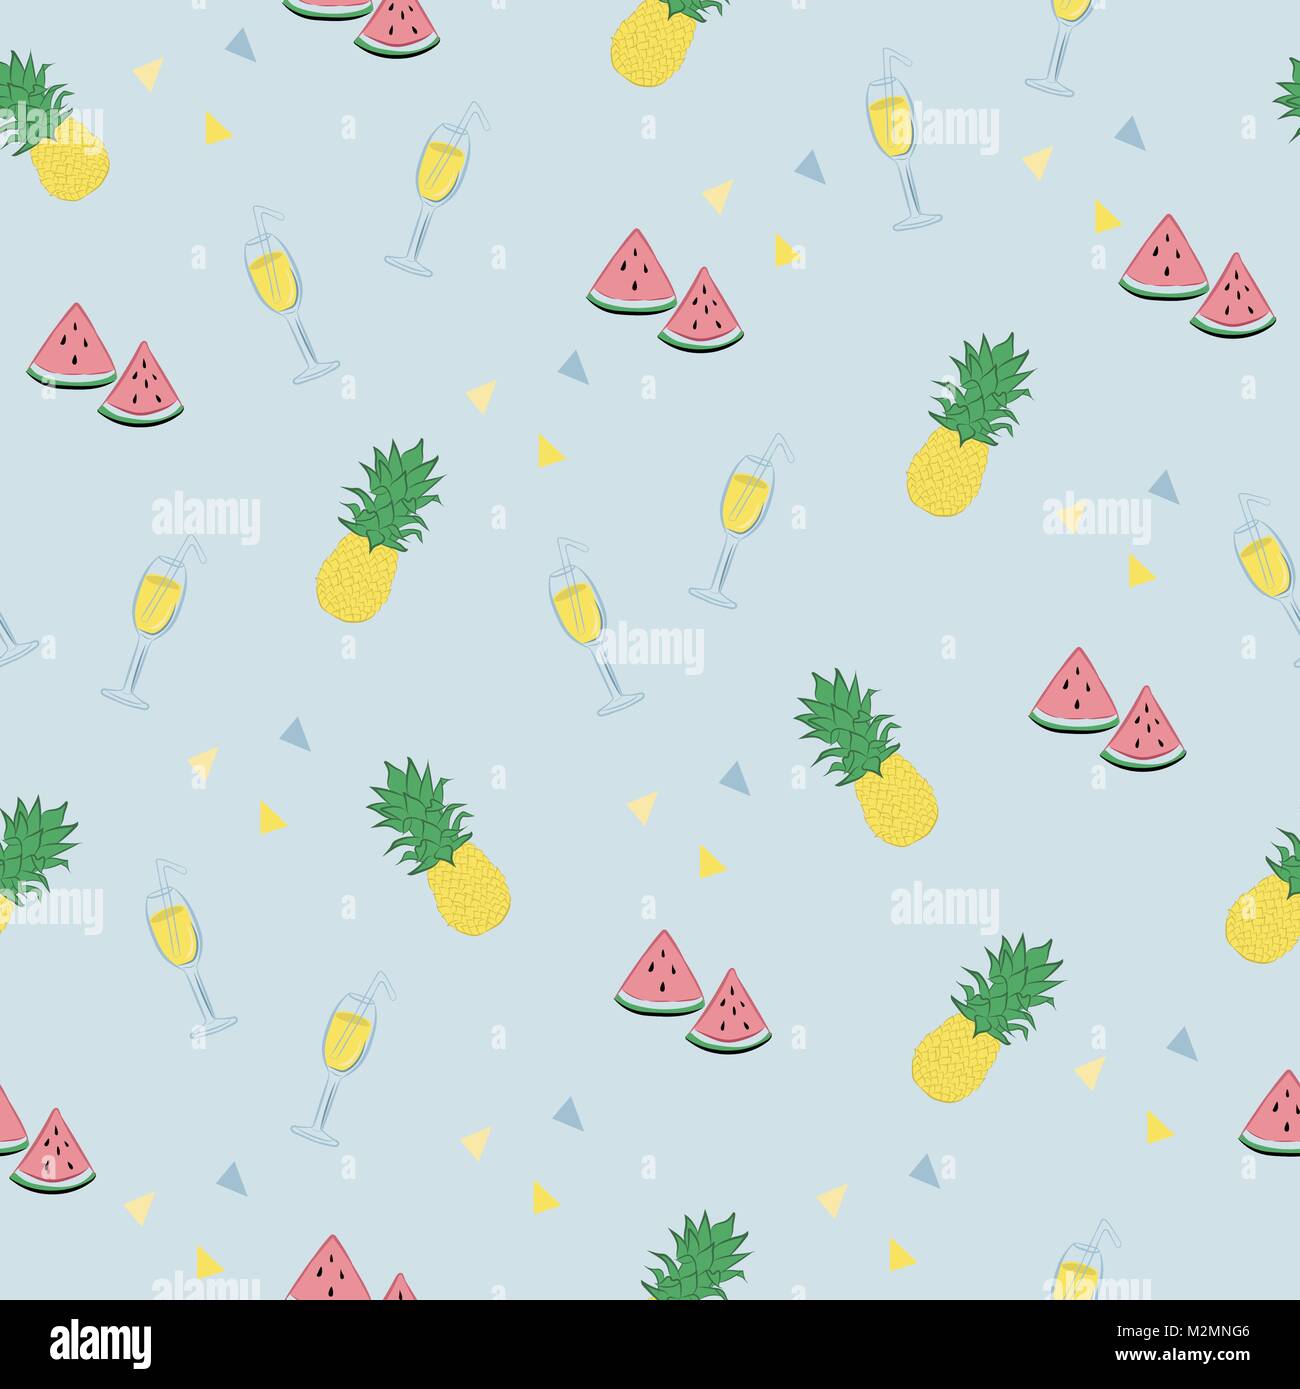 Carino pattern tropicale con i cocomeri, ananassi, cocktail e piccoli triangoli in colori pastello e pastello blu sullo sfondo. Illustrazione Vettoriale